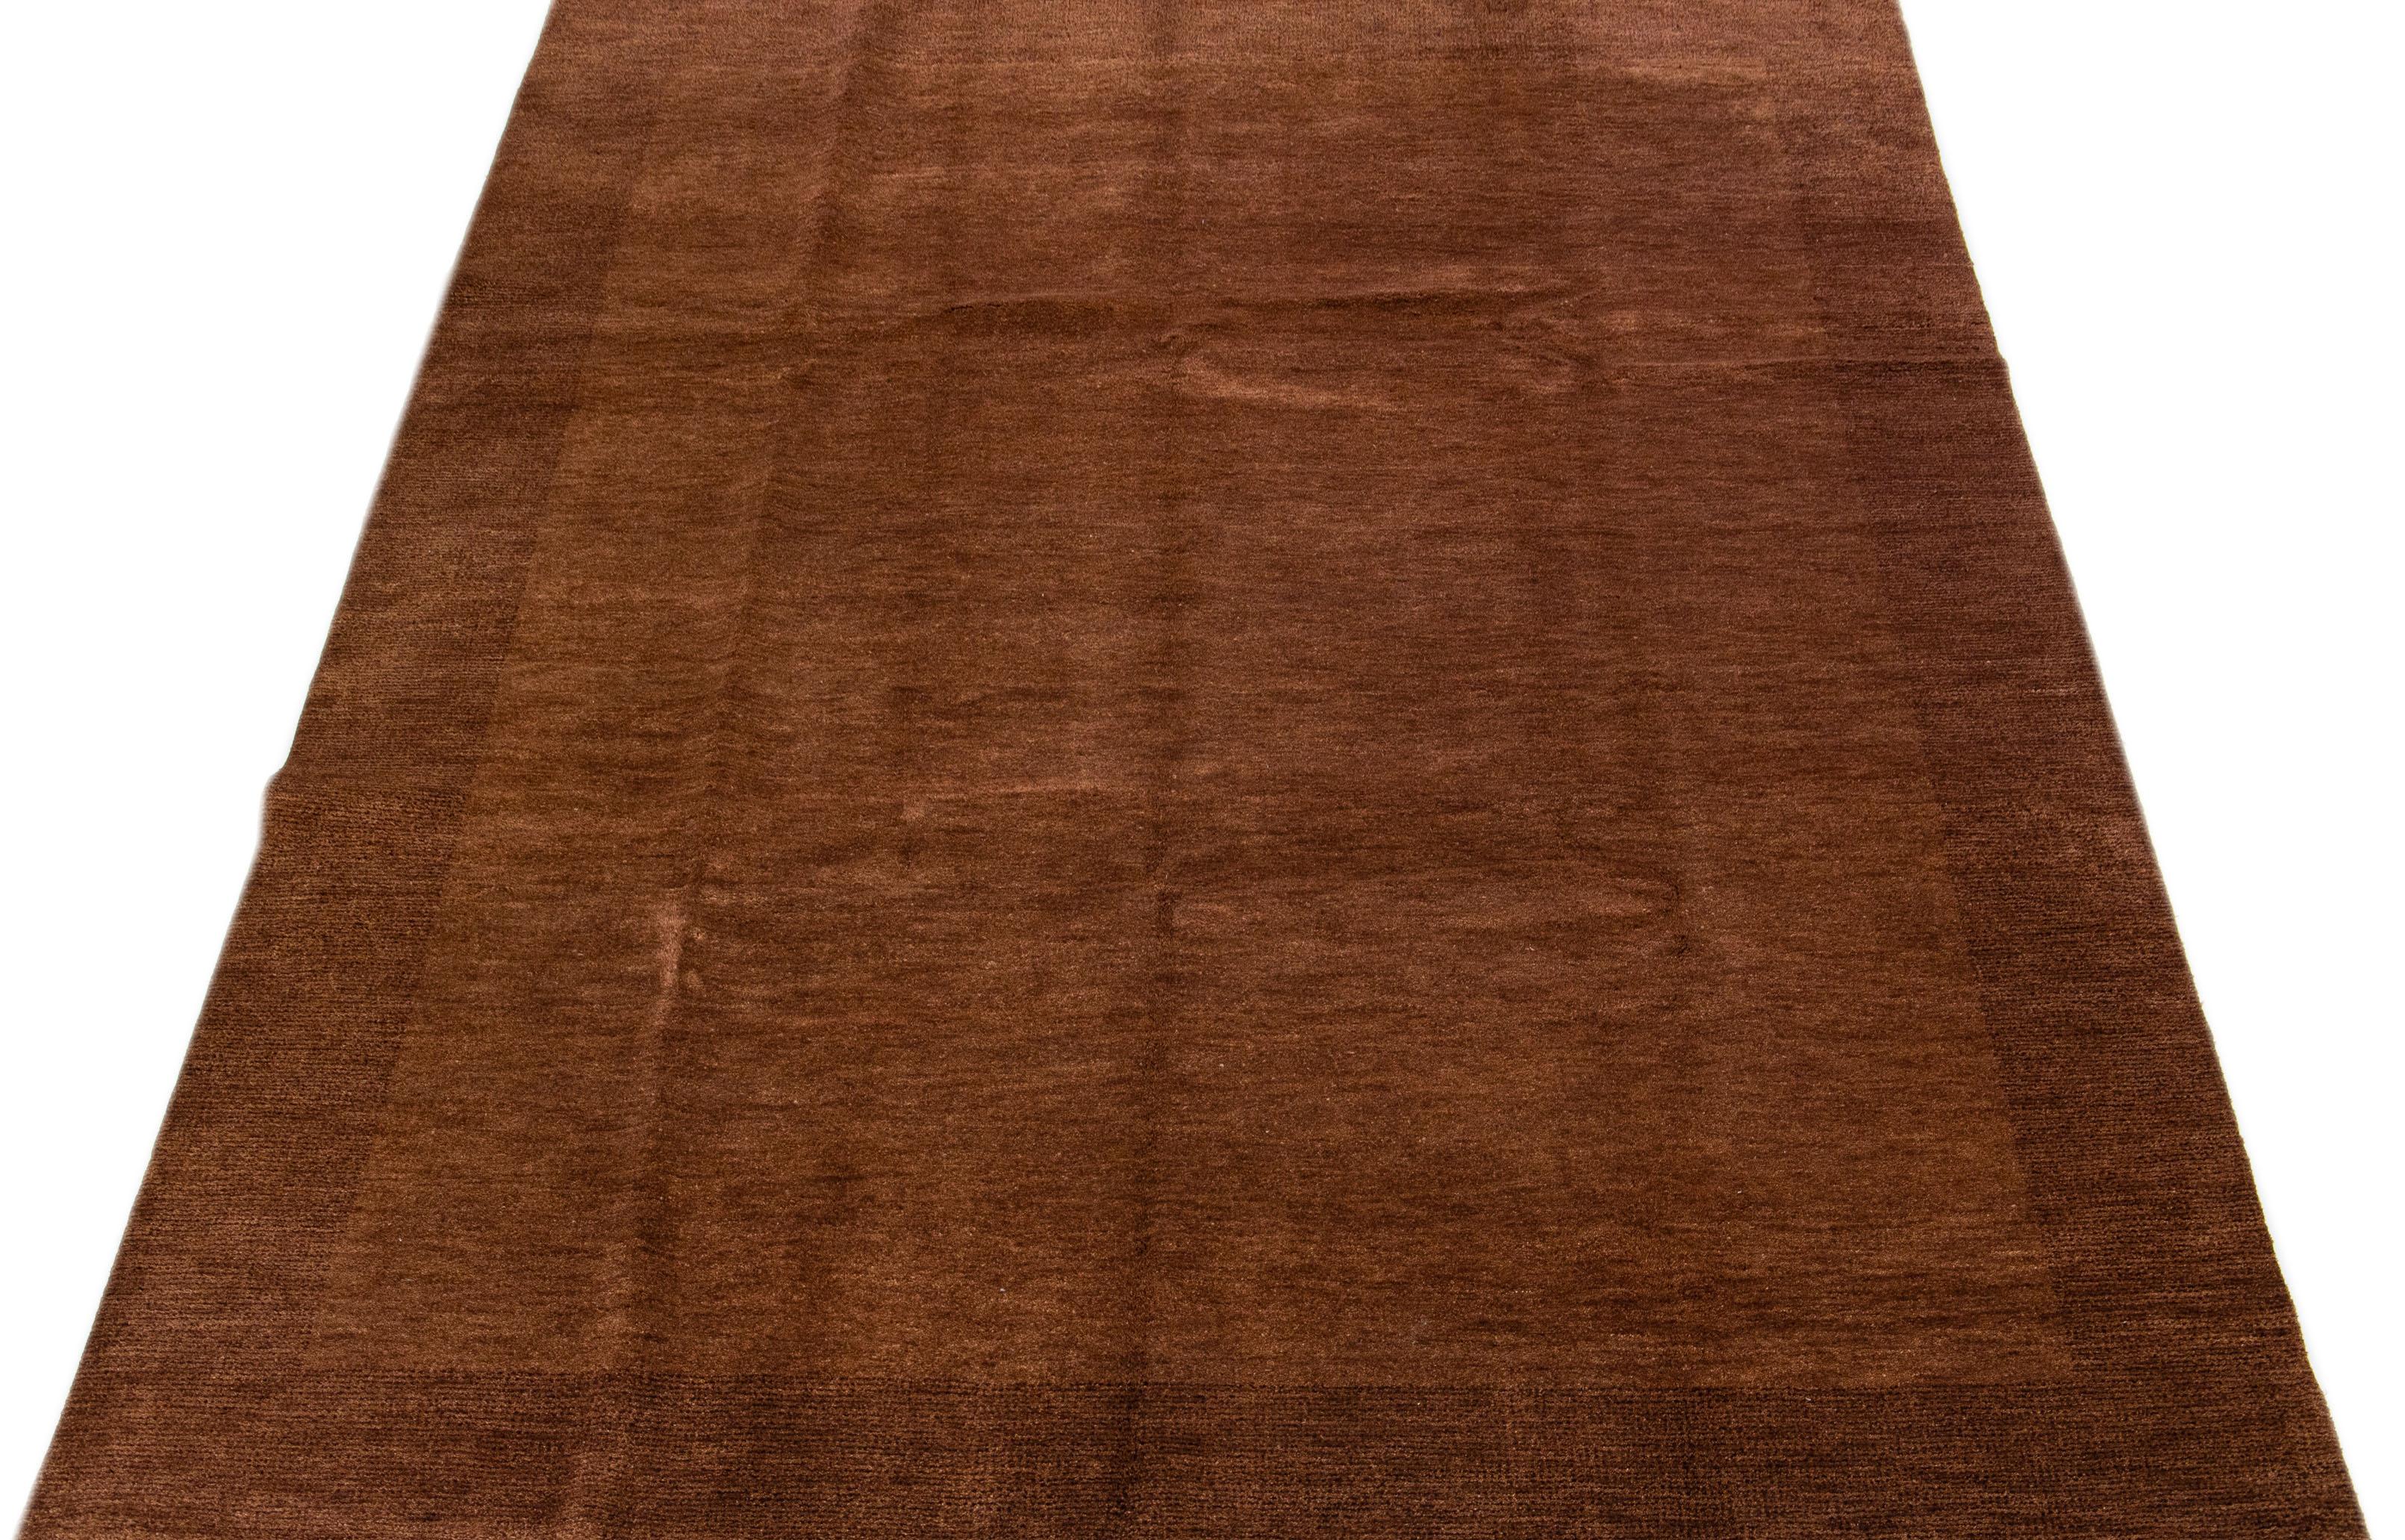 Schöner, moderner, handgewebter Wollteppich im Gabbeh-Stil mit einem braunen Farbfeld in einem herrlichen unifarbenen Design.

Dieser Teppich misst: 9'4